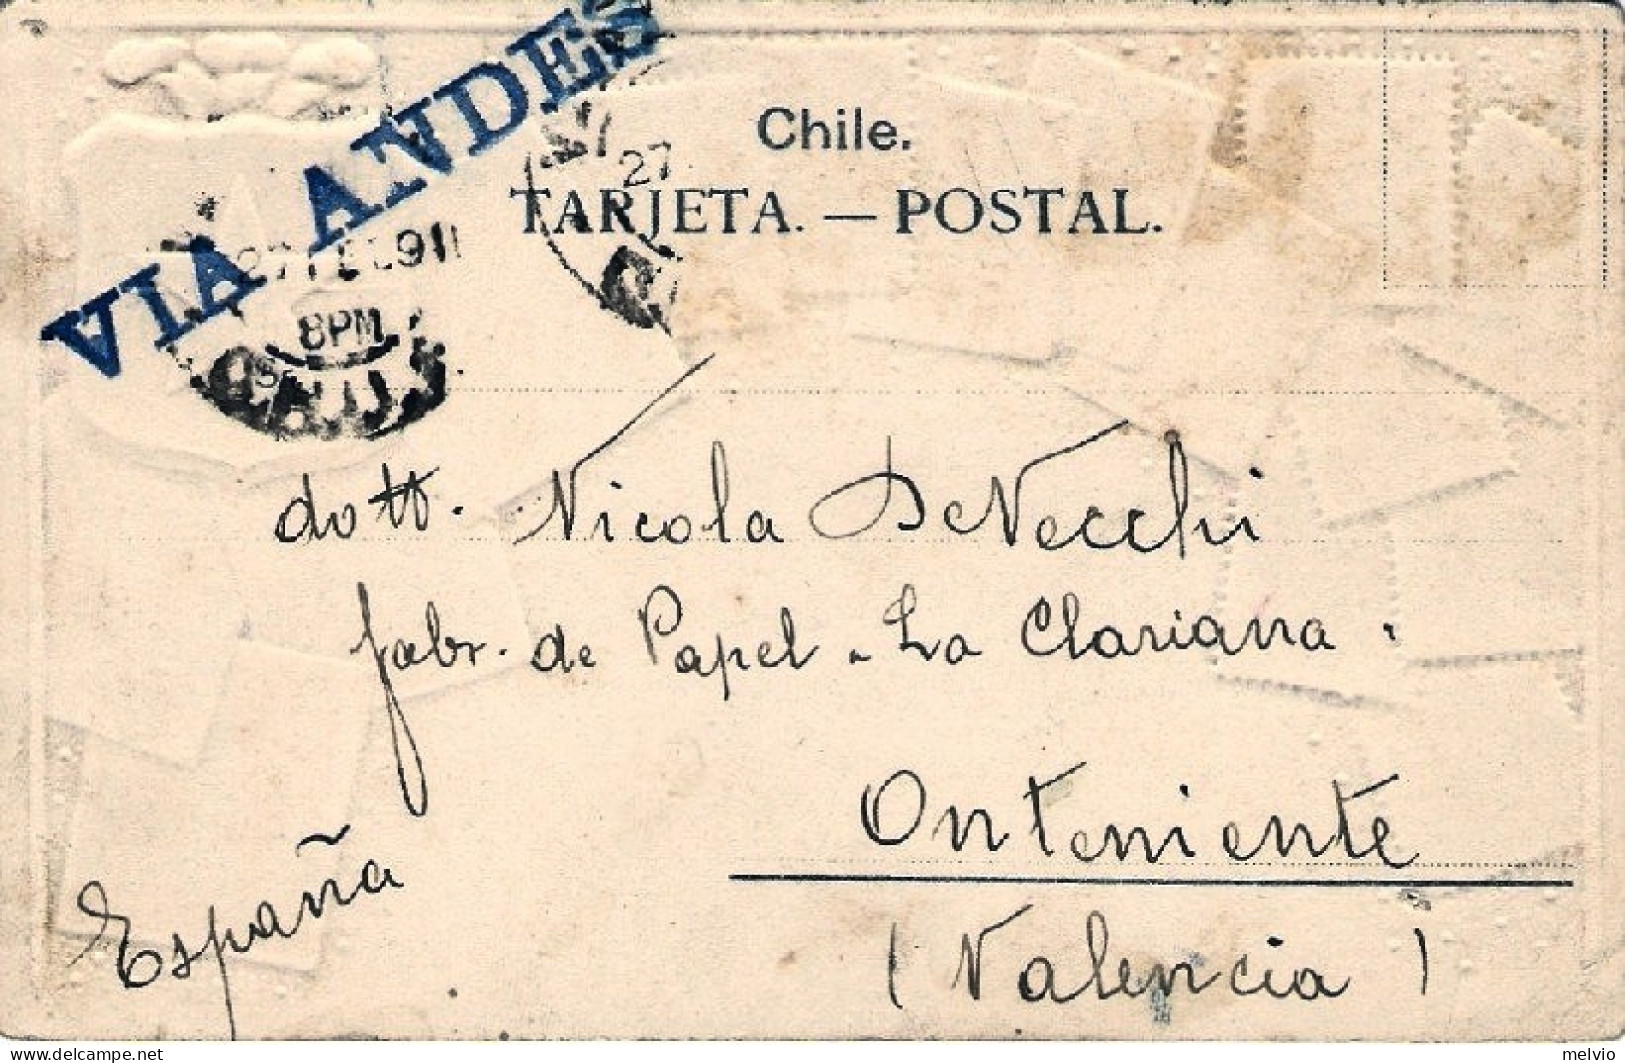 1904-Cile Cartolina Con Facsimile Di Francobolli Cileni In Rilievo Diretta In Sp - Chile